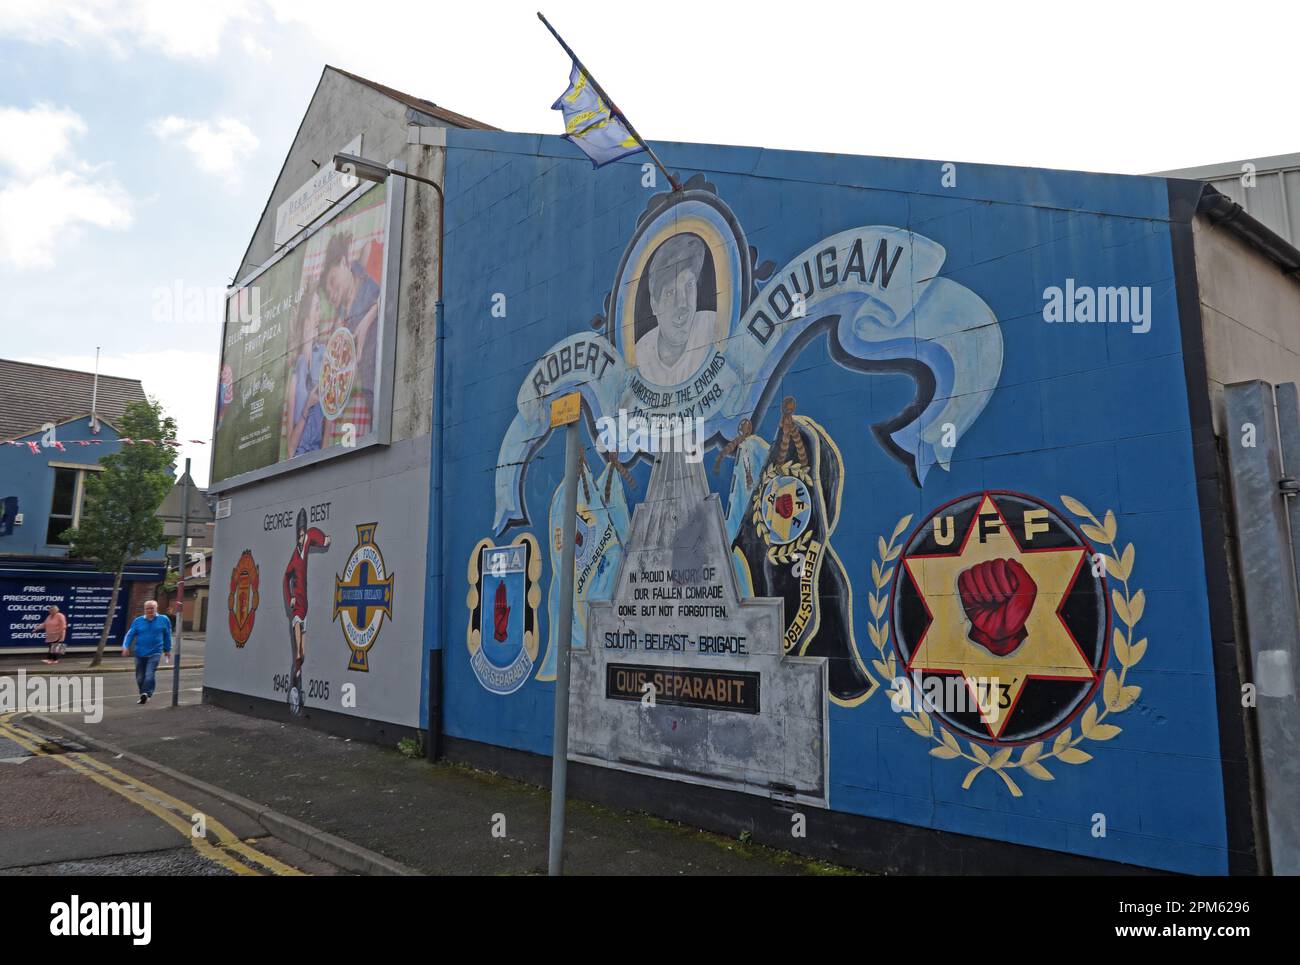 Wandgemälde für Robert Dougan, ermordet am 10. Februar 1998, UDA, Blythe Street, Sandy Row, Belfast, Nordirland, Vereinigtes Königreich, BT12 5EY Stockfoto